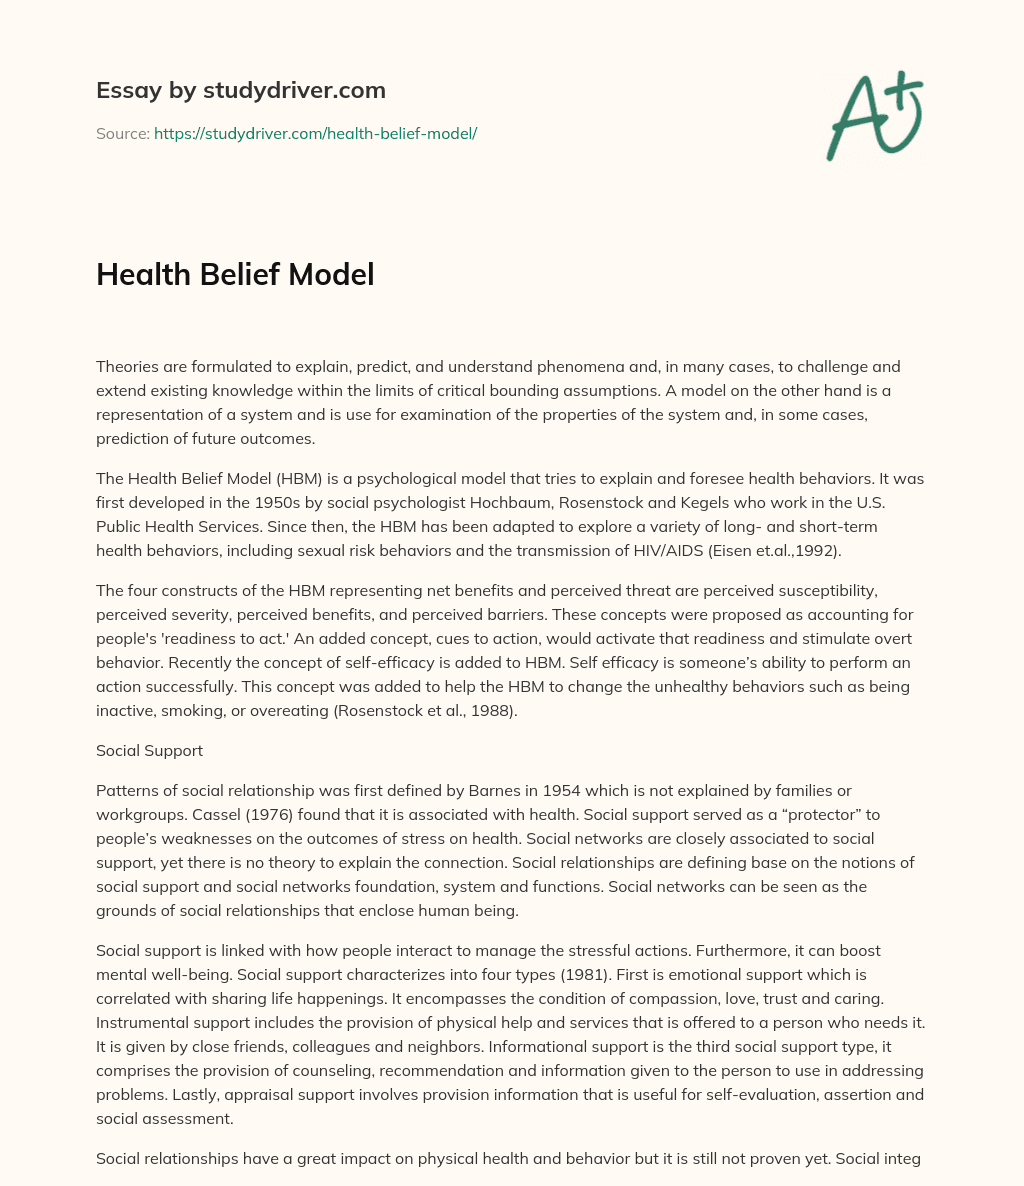 Health Belief Model essay